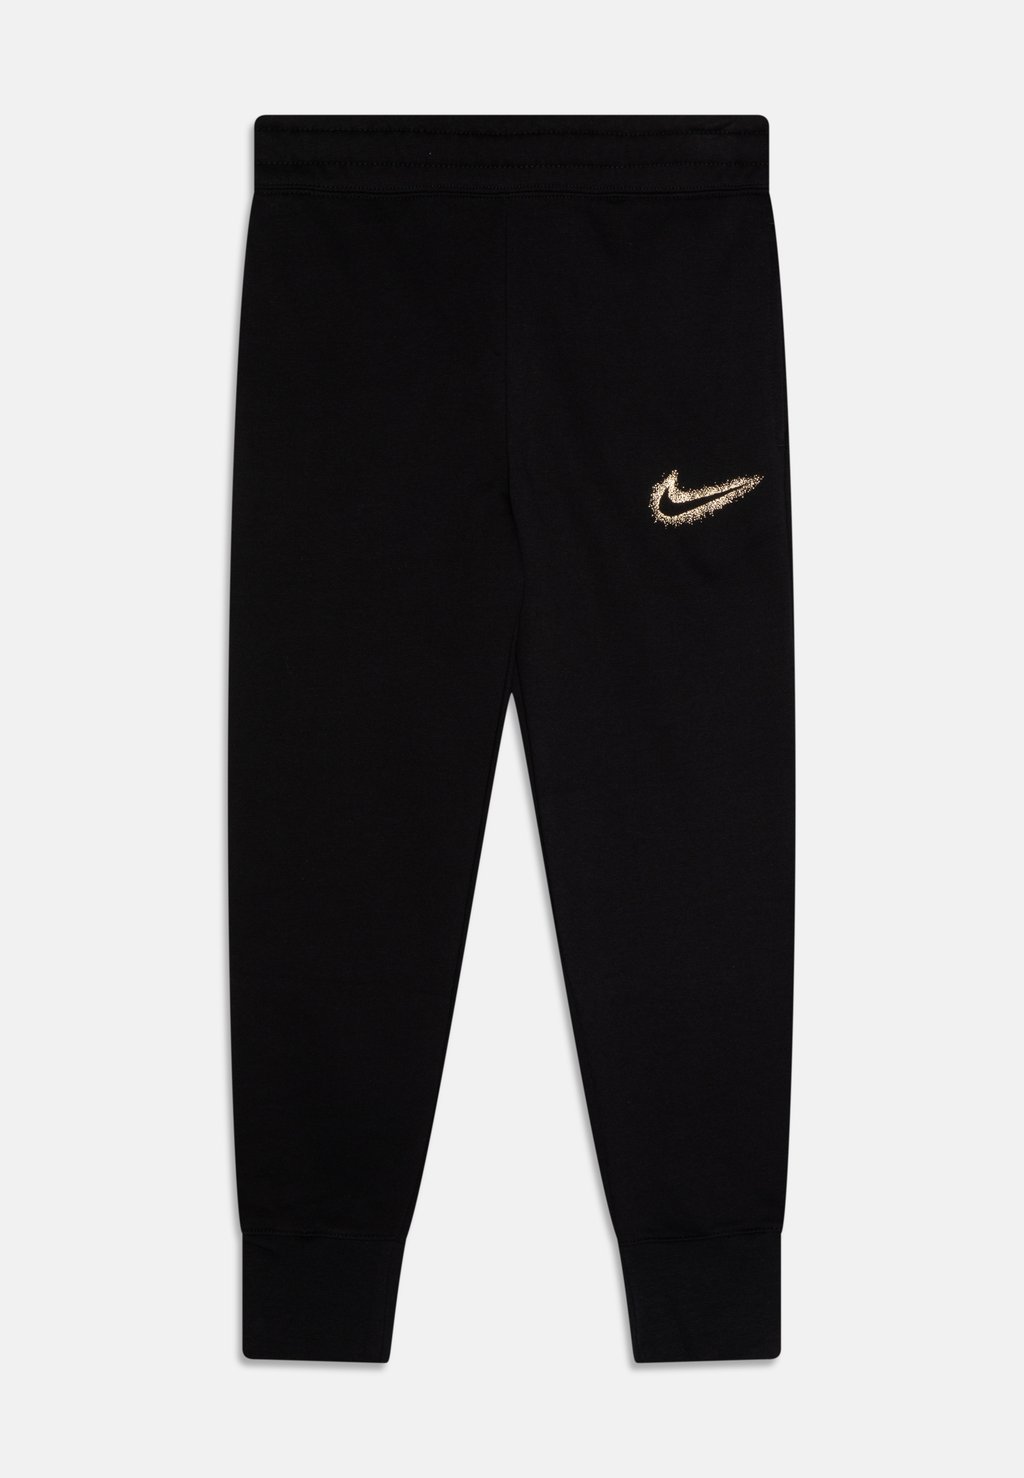 Спортивные штаны NSW FLC PANT Nike Sportswear, черный спортивные брюки nike as m nsw punk pant drawstring black cu4270 010 черный